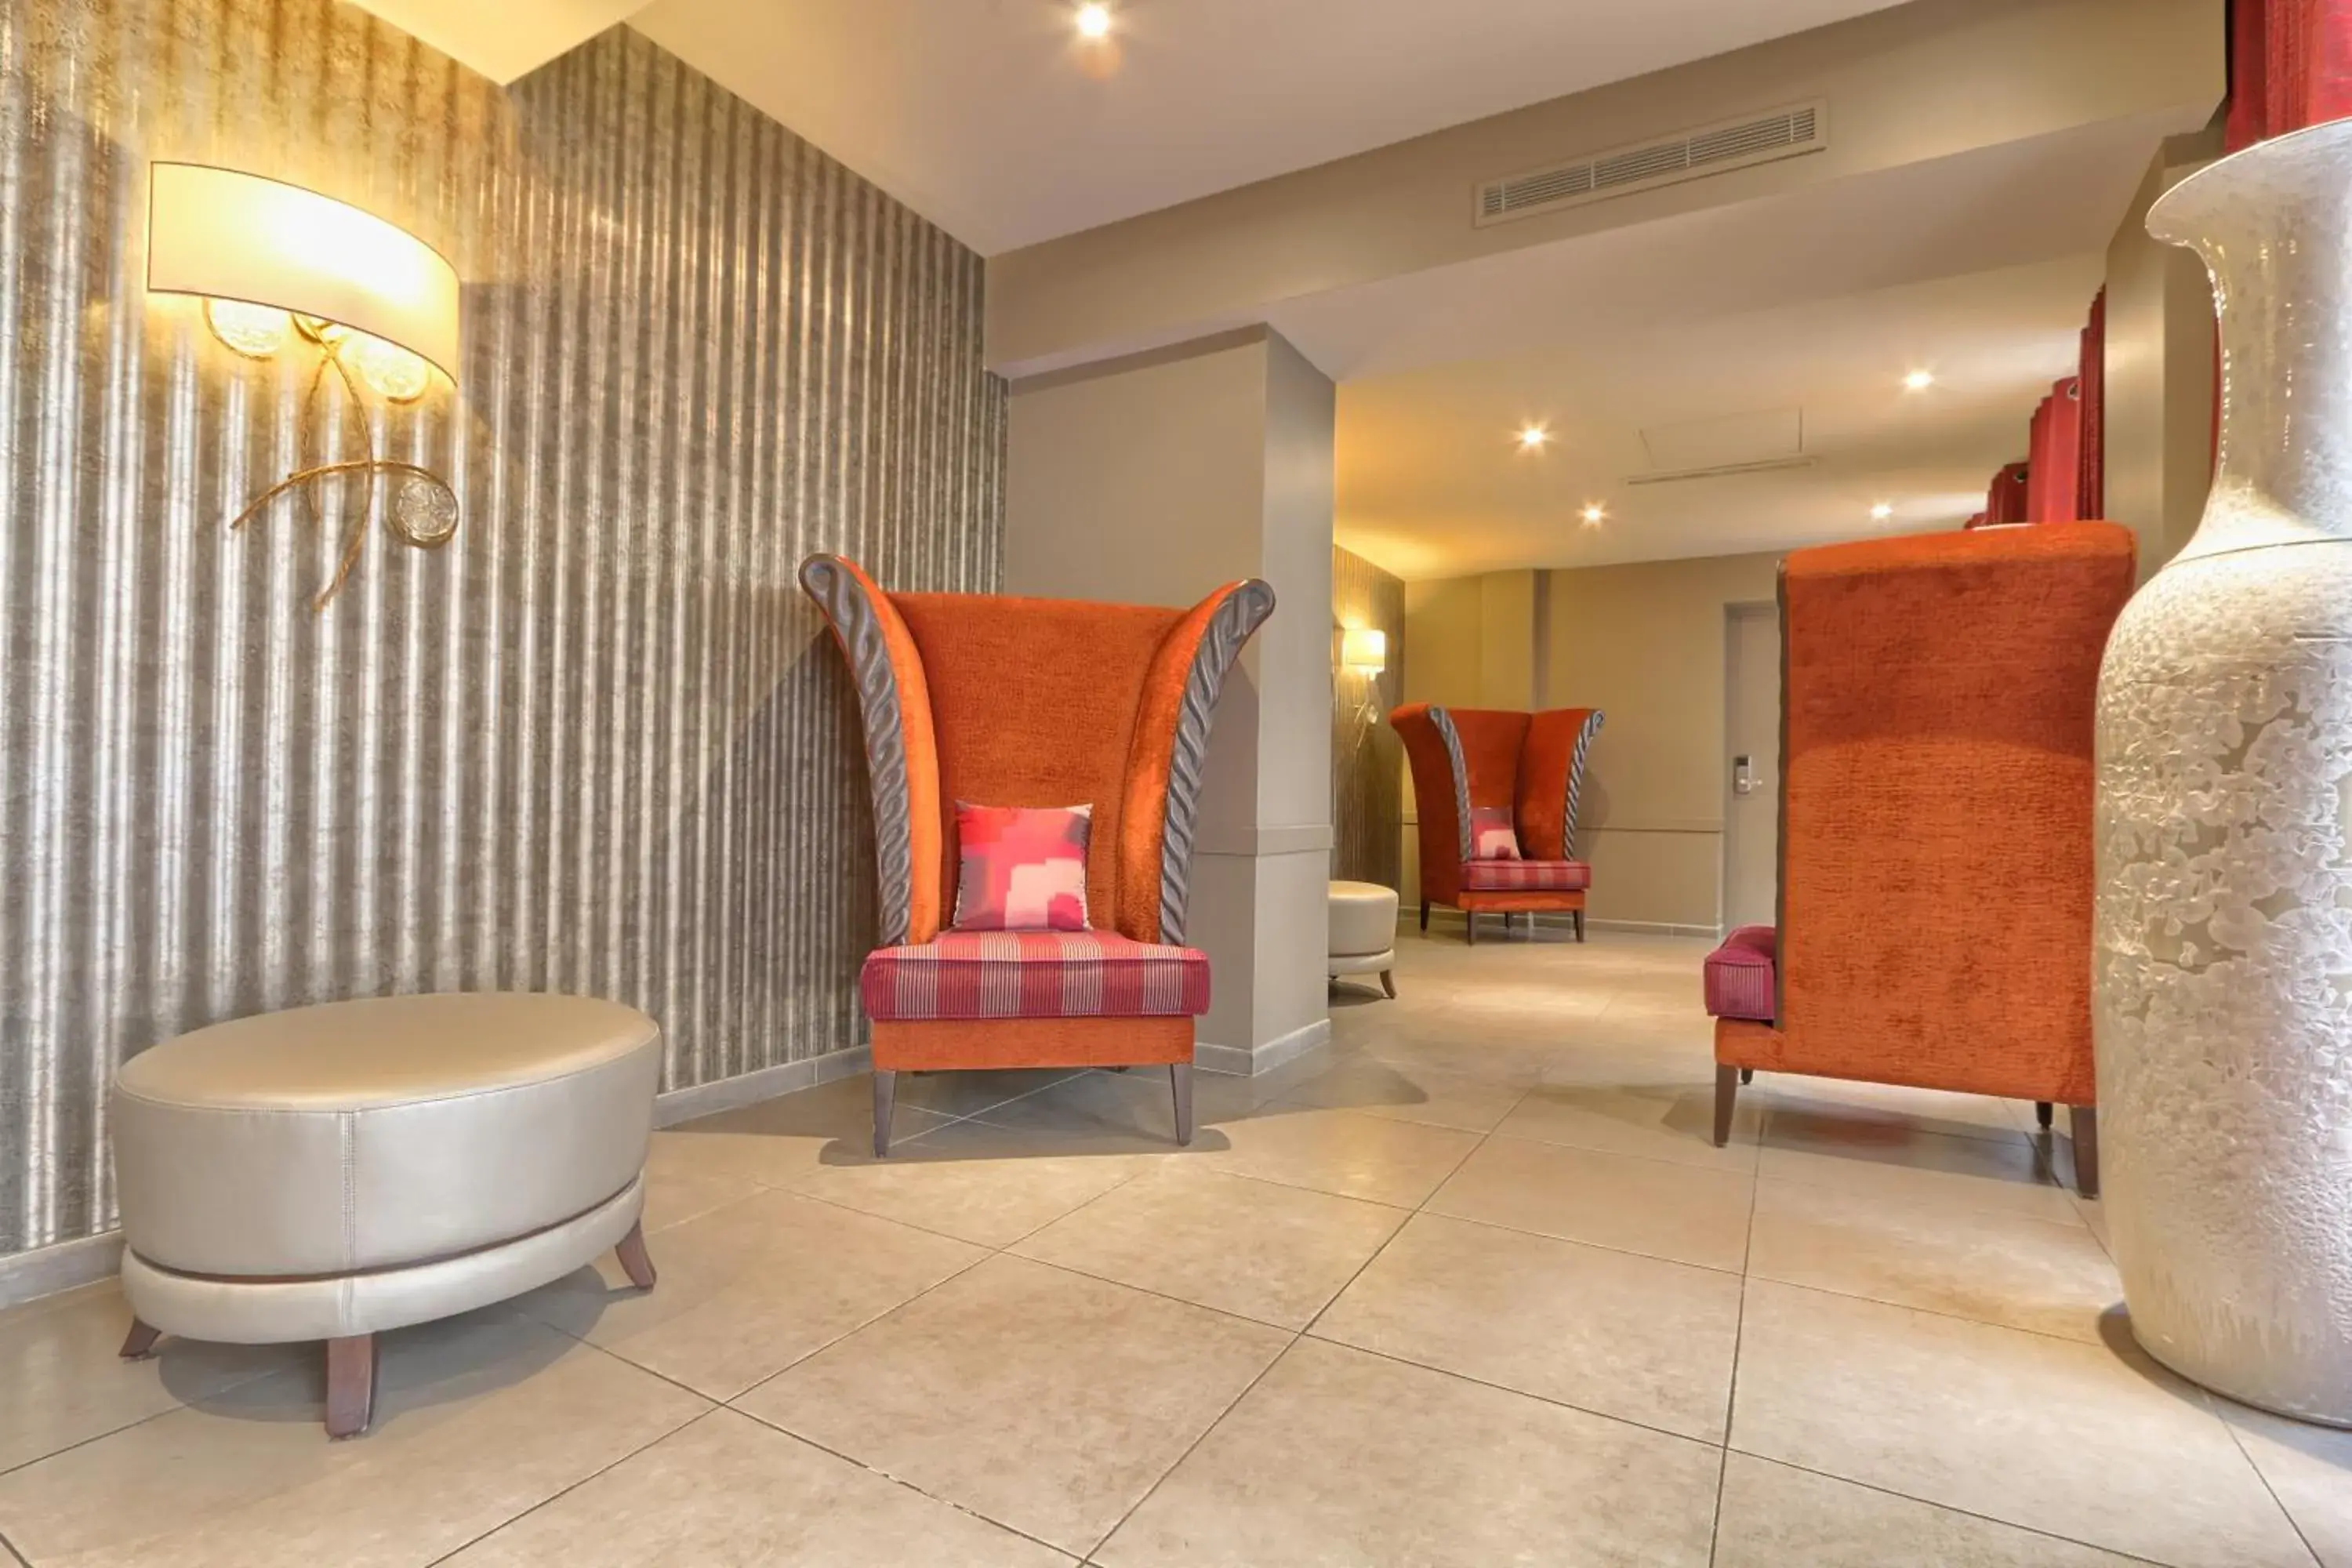 Lobby or reception, Bathroom in Hotel Mondial